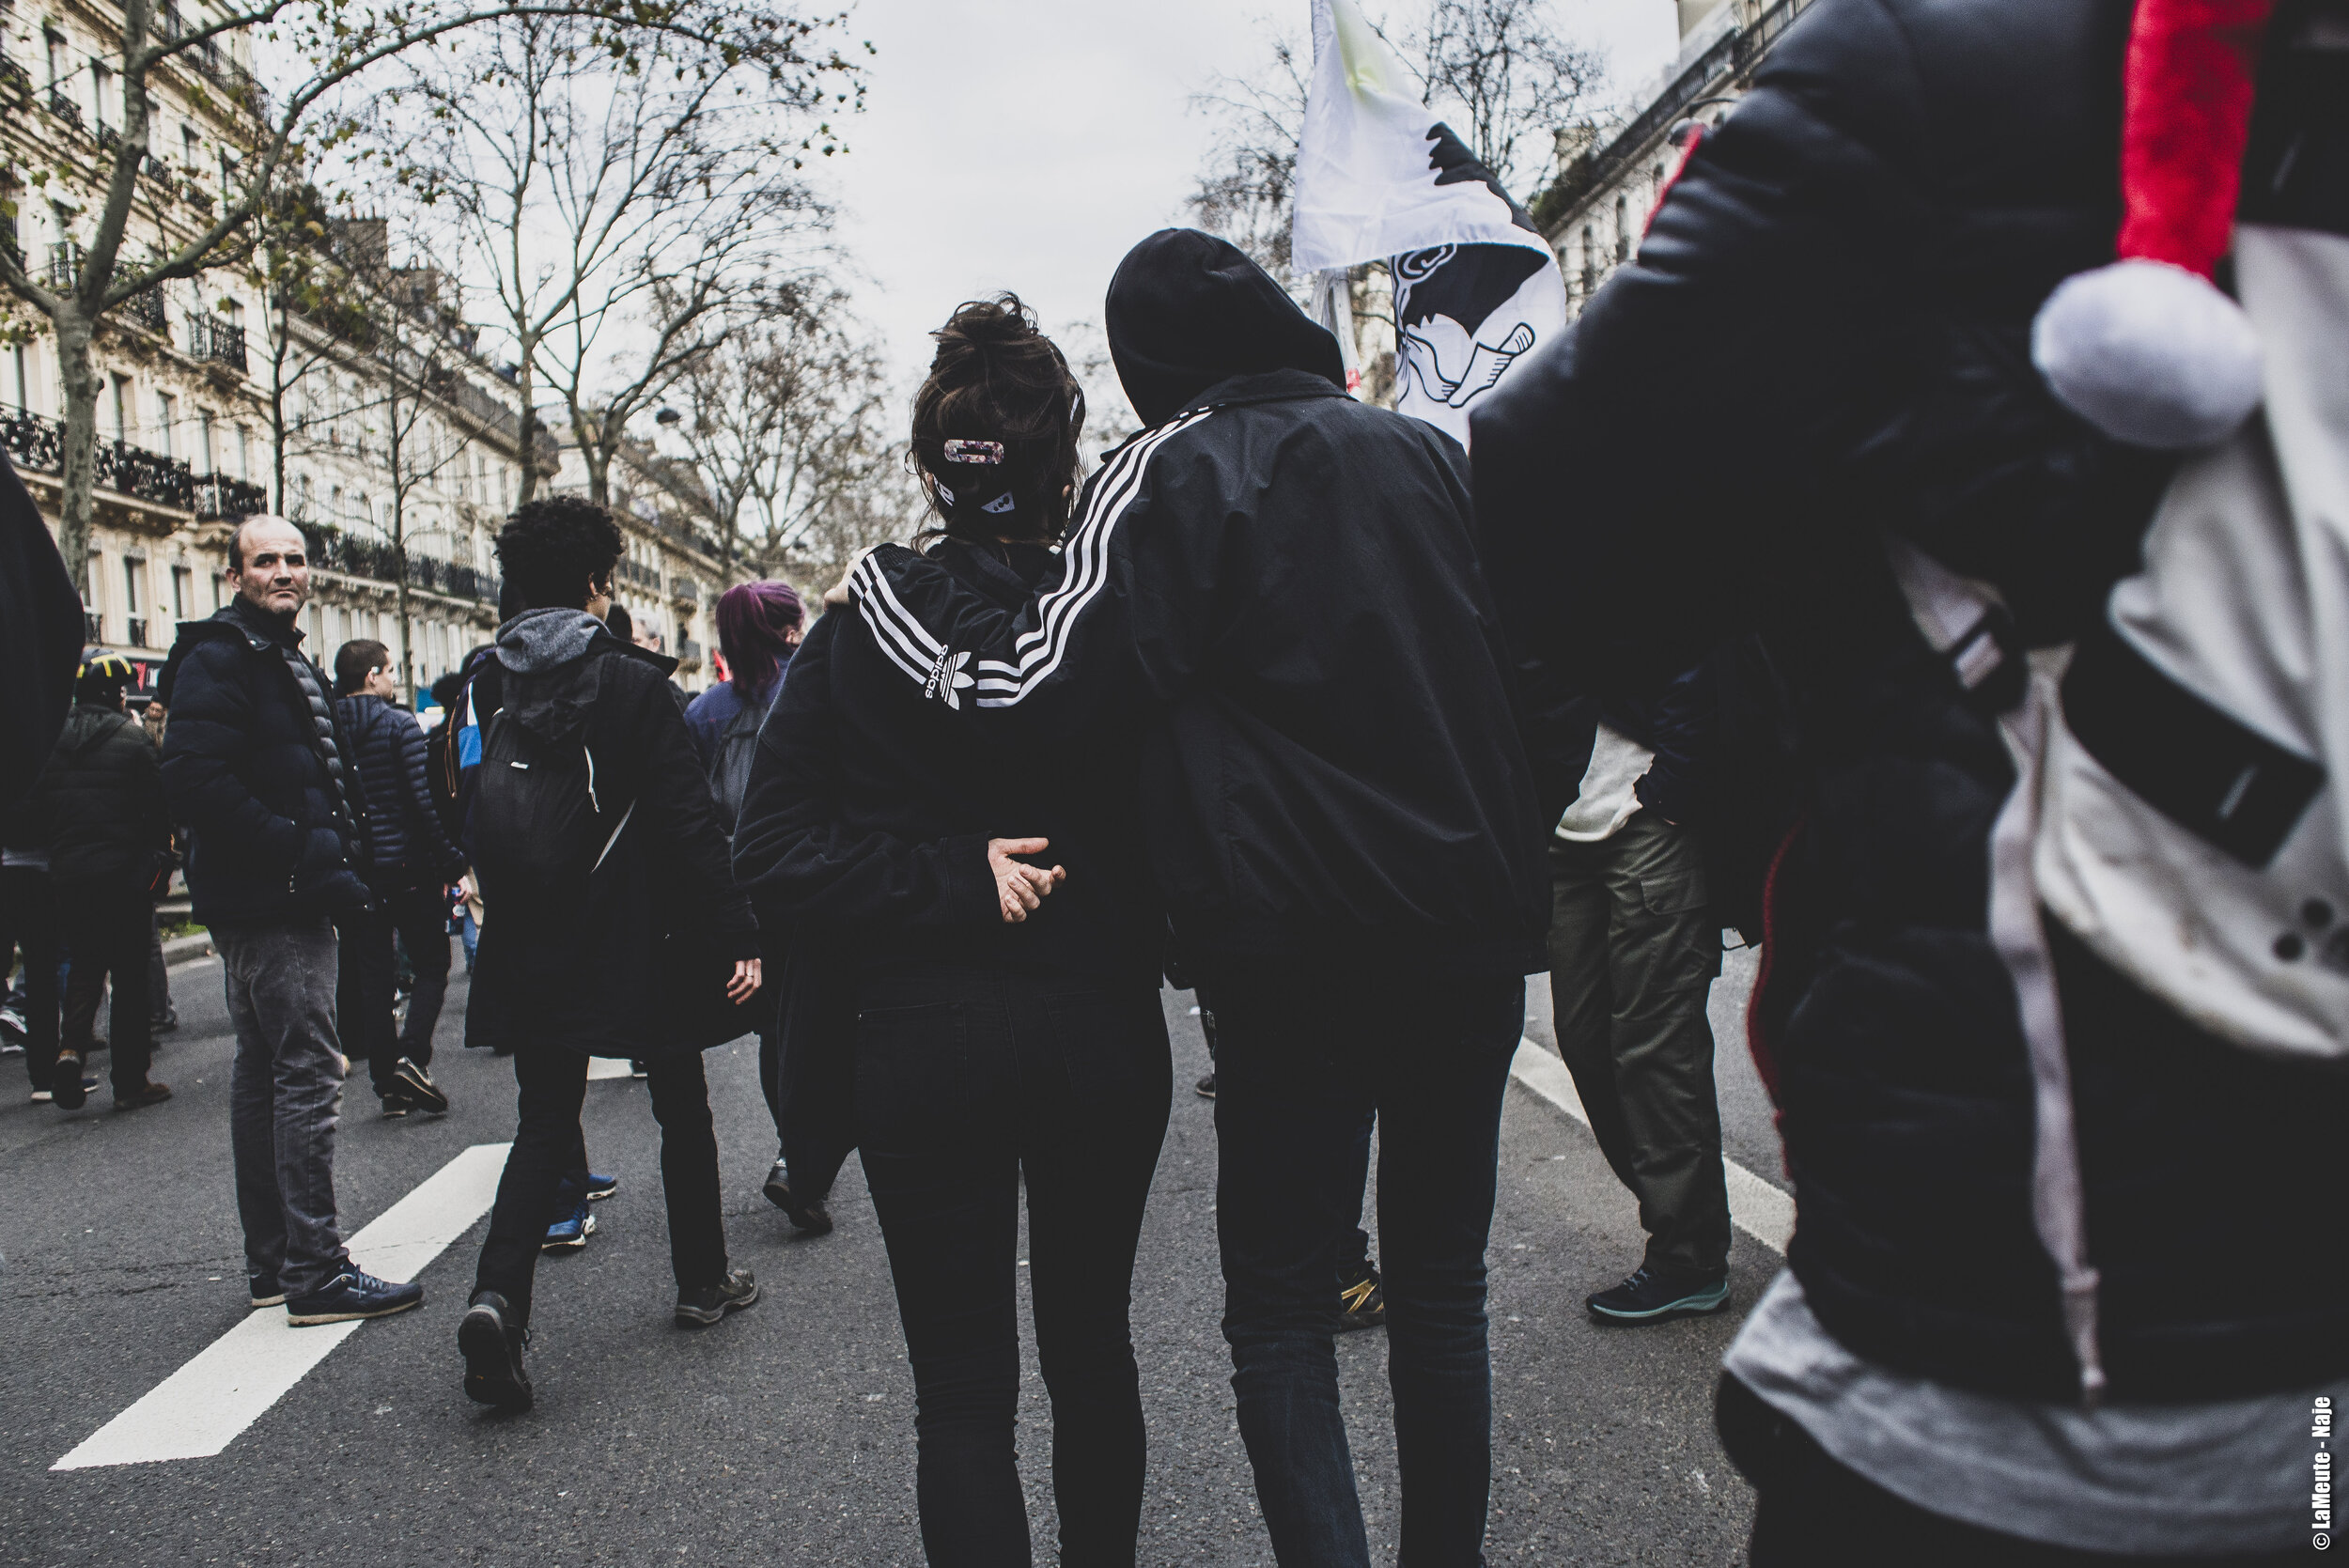   Bras dessus, bras dessous, deux manifestant•es avancent au milieu du cortège.  ©LaMeute - Naje 